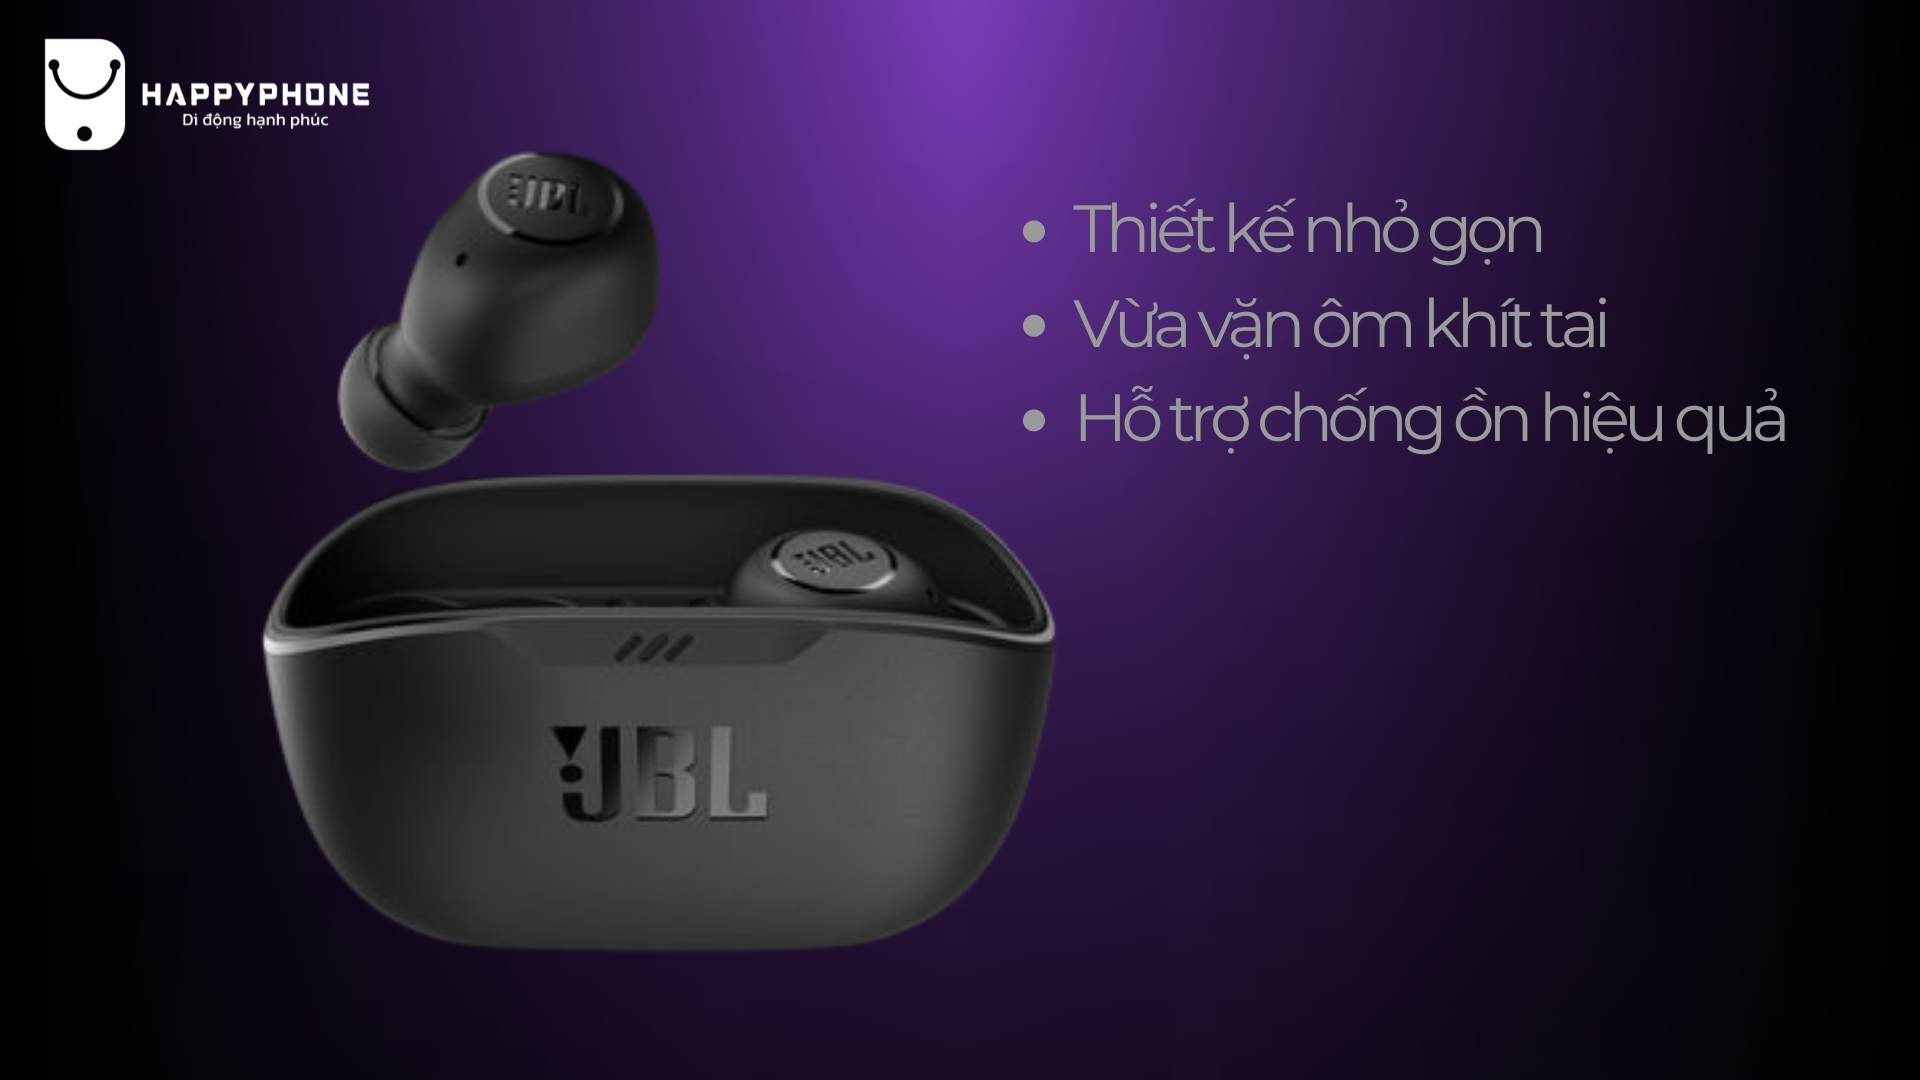 Tai nghe JBL Wave Beam thiết kế Comfortable fit hỗ trợ chống ồn hiệu quả